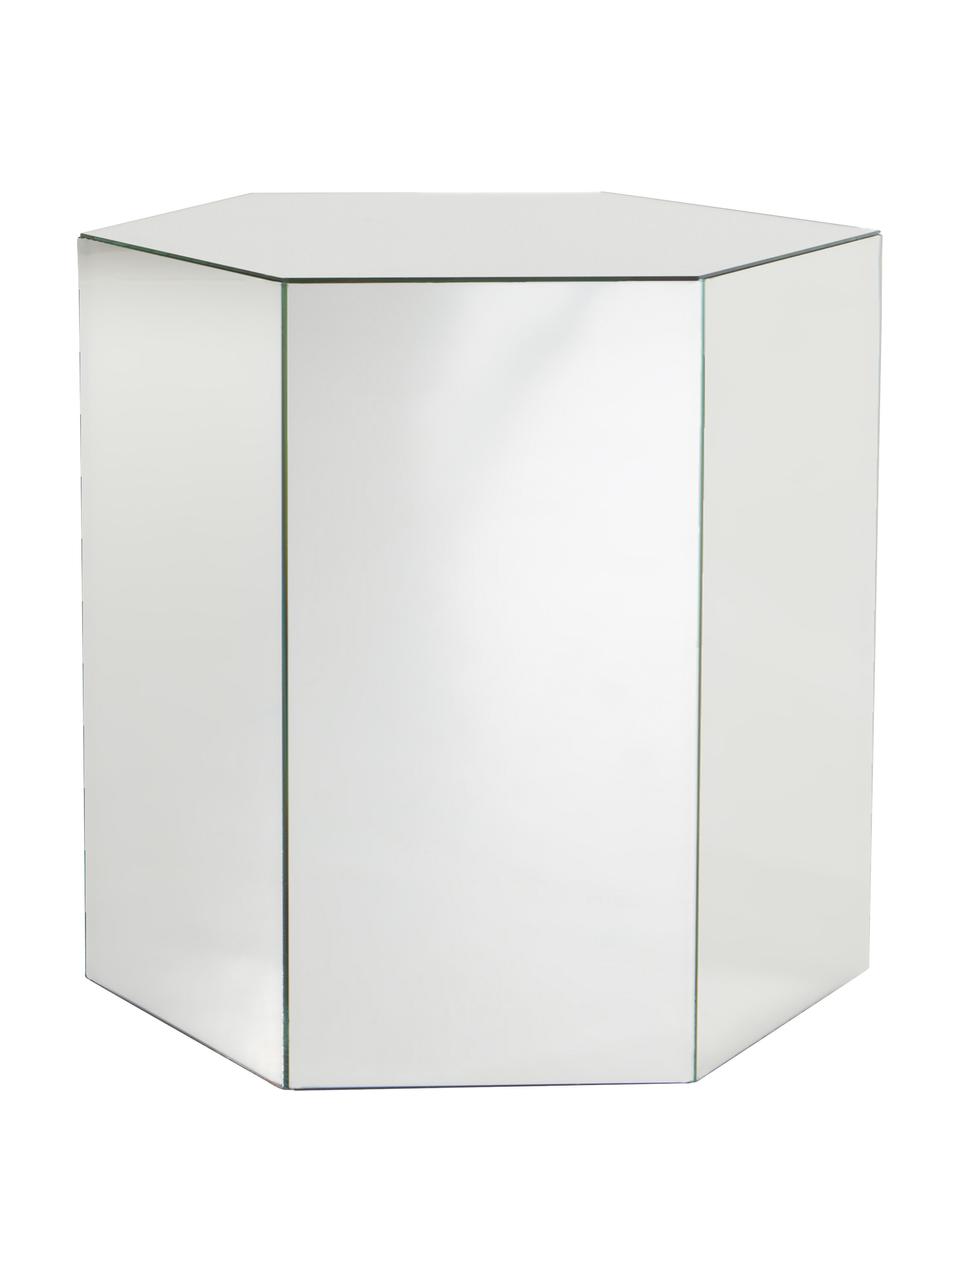 Skleněný odkládací stolek se zrcadlovým efektem Scrape, MDF deska (dřevovláknitá deska střední hustoty), zrcadlo, Zrcadlové sklo, Š 40 cm, V 40 cm